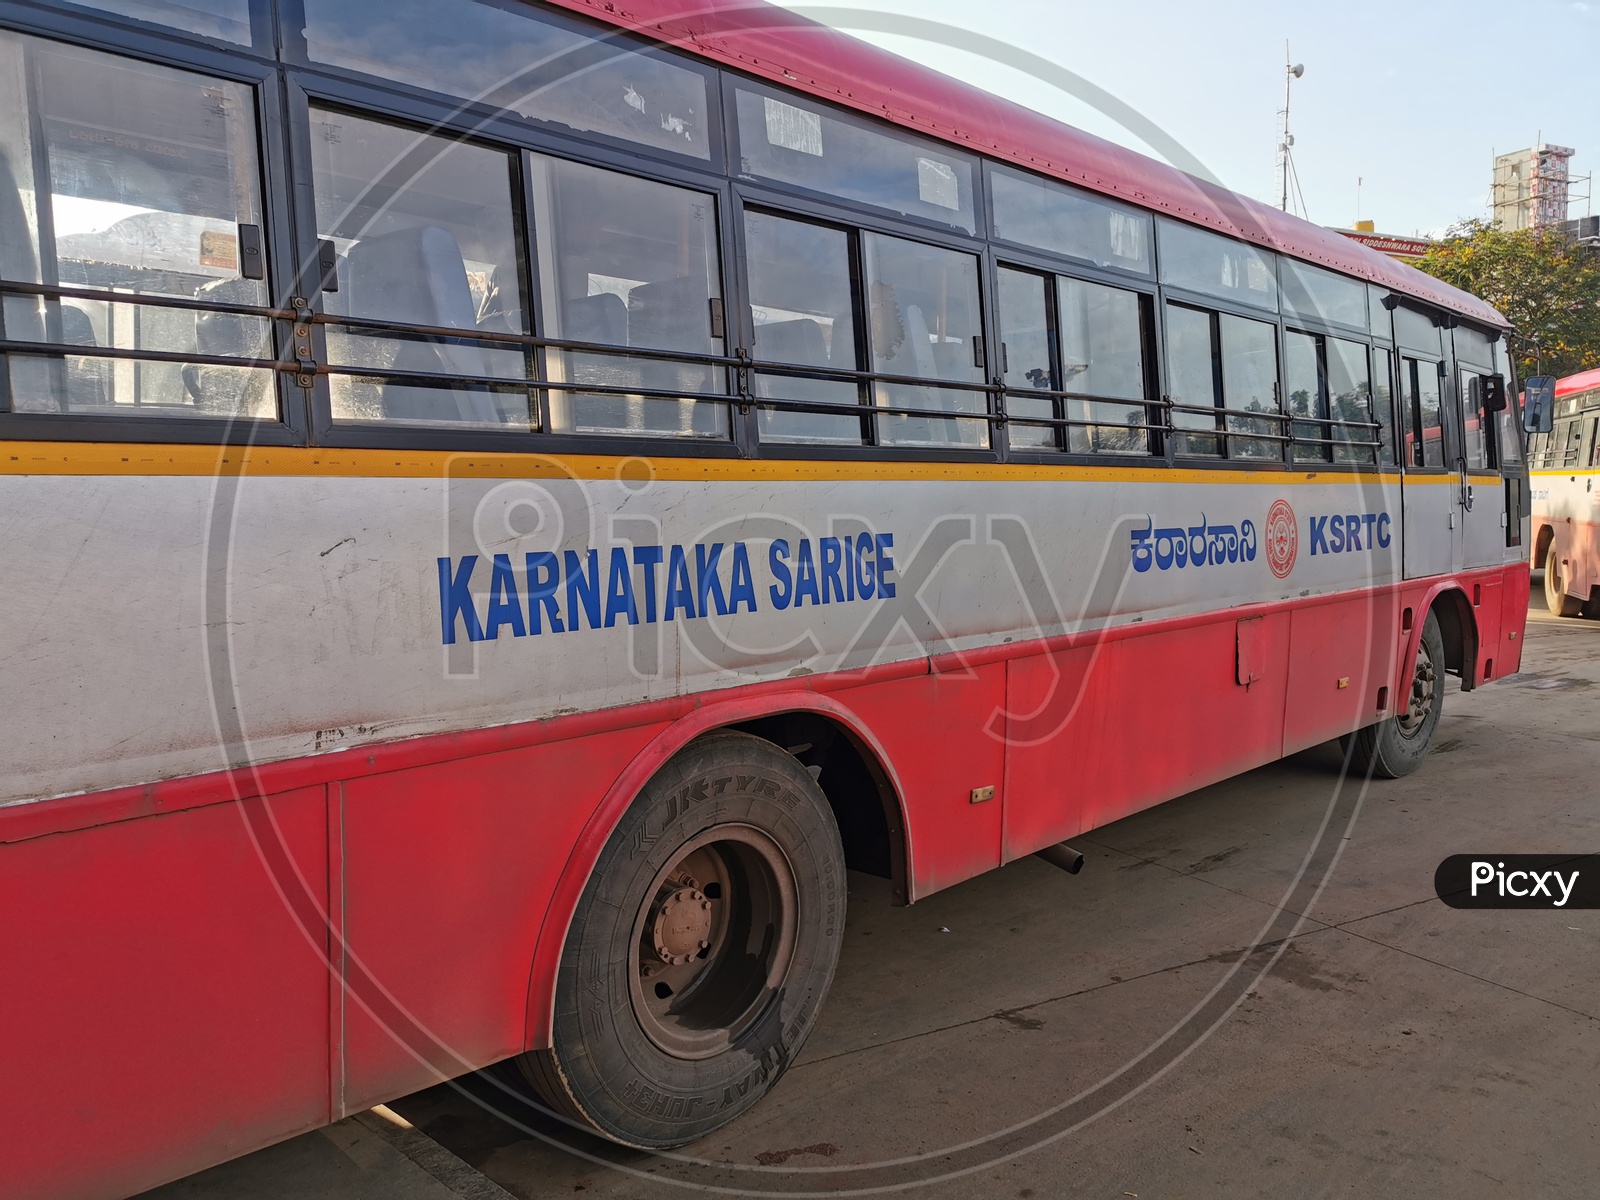 Karnataka RTC Buses in Bus Depot